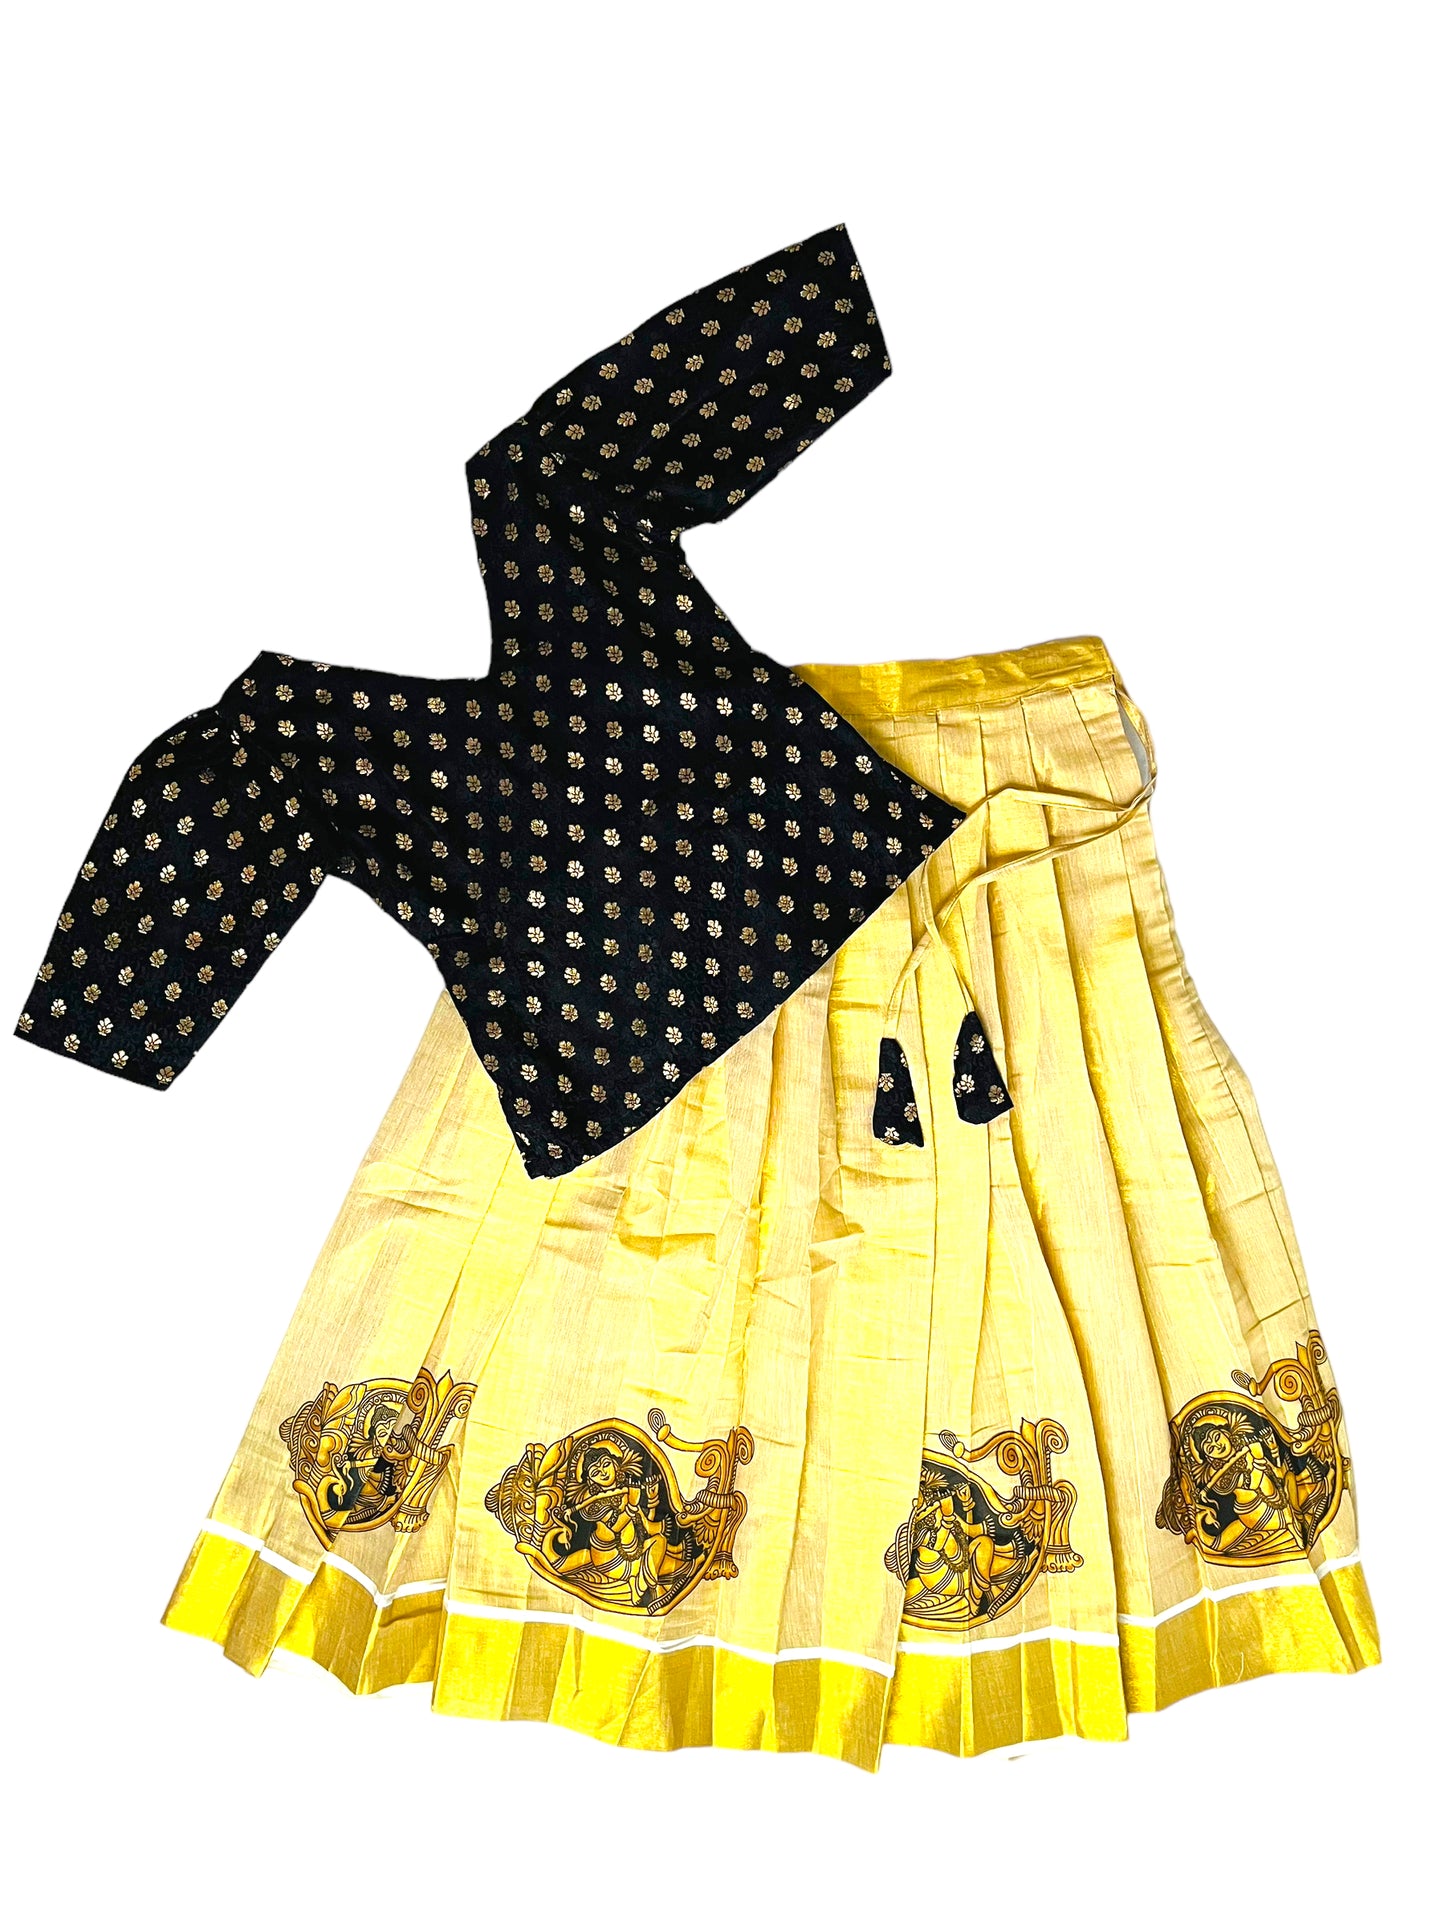 Girls Pattu Pavadai |Black Gold Skirt blouse| Kerala Onam Dawani| Set Saree| Indian  Onam saree | kerala Saree |Pattu pavada| Age 8-14